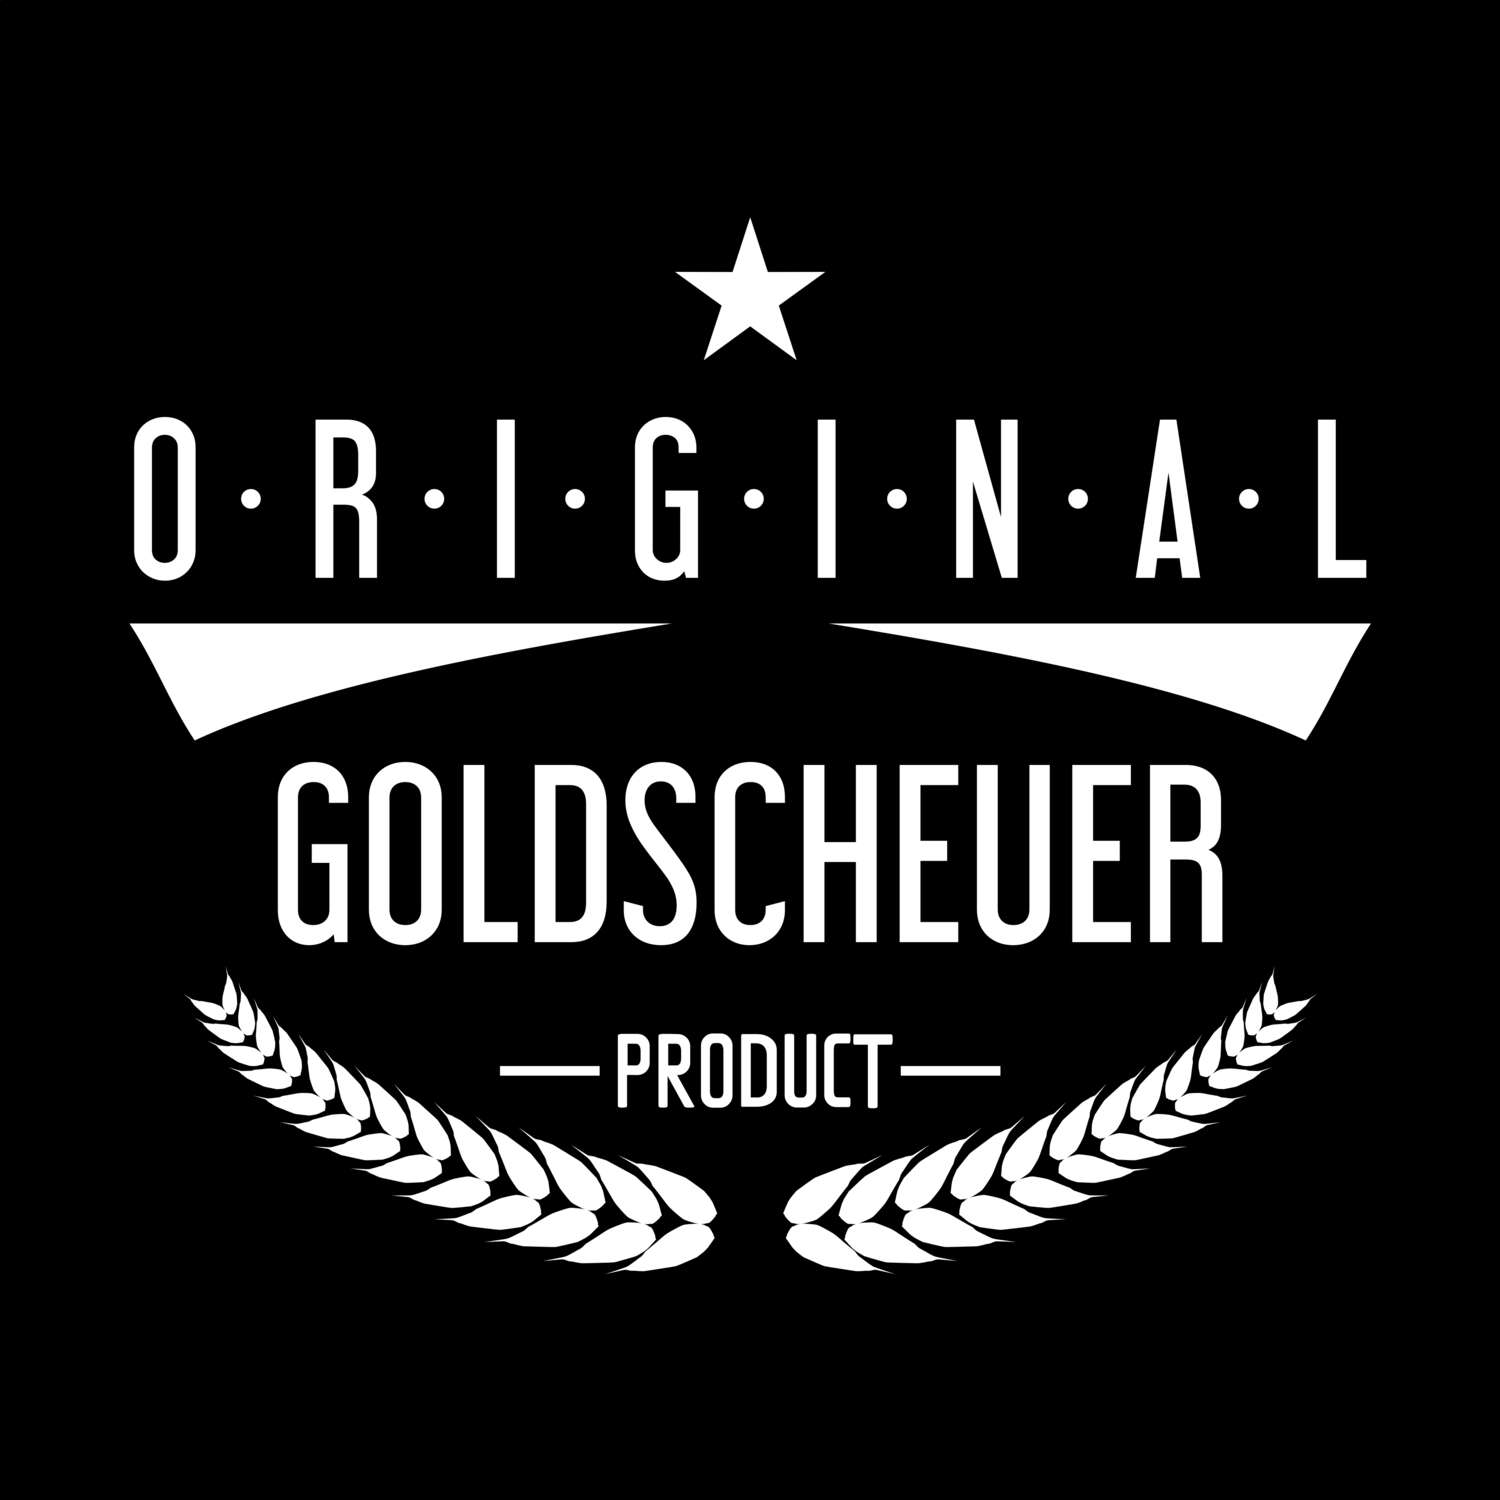 Goldscheuer T-Shirt »Original Product«